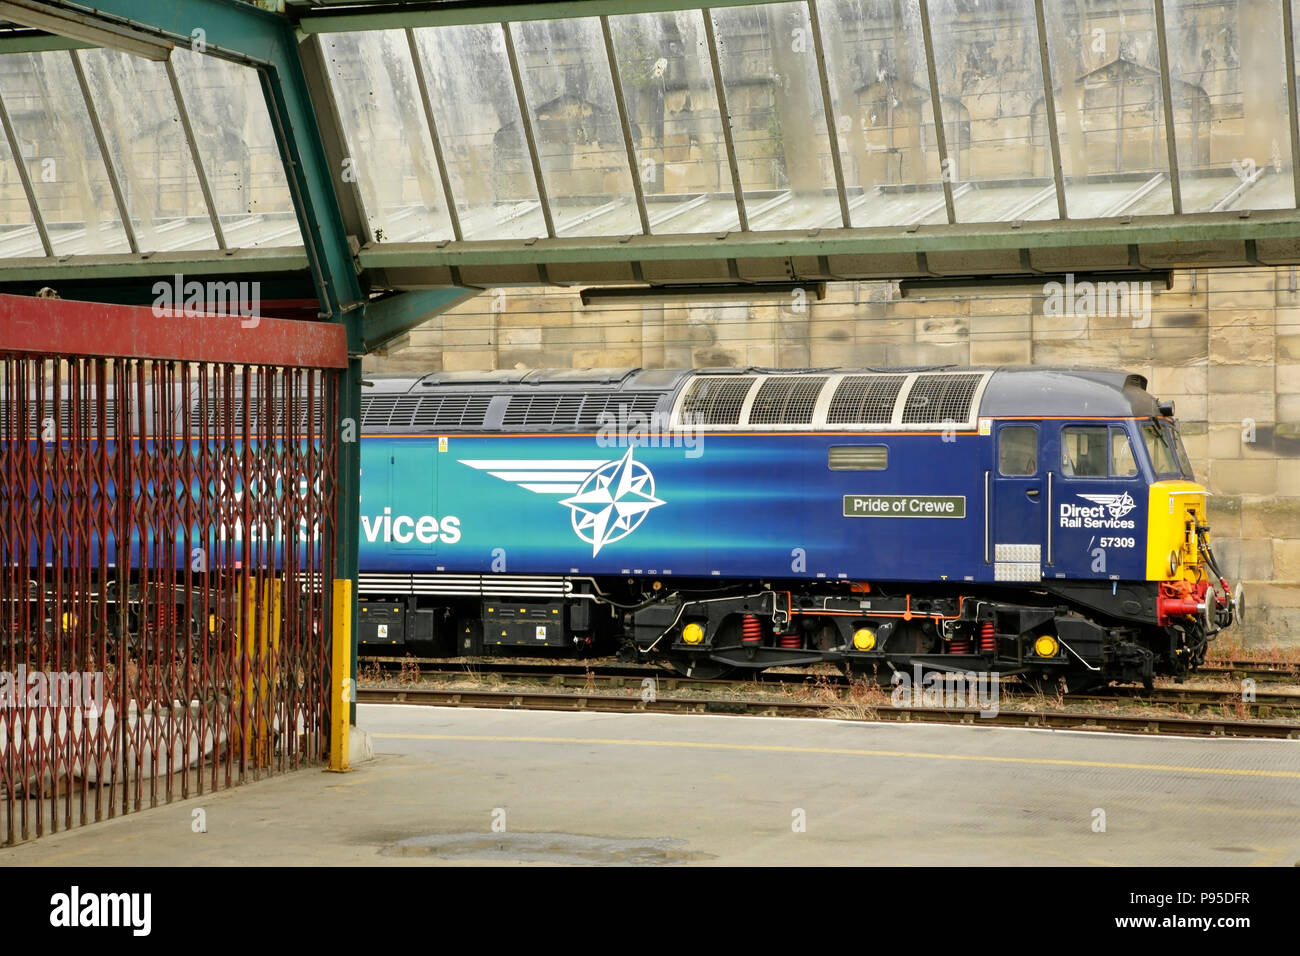 Services ferroviaires directs 57 locomotives diesel 57309 'fierté' de Crewe à Carlisle, Royaume-Uni. Banque D'Images